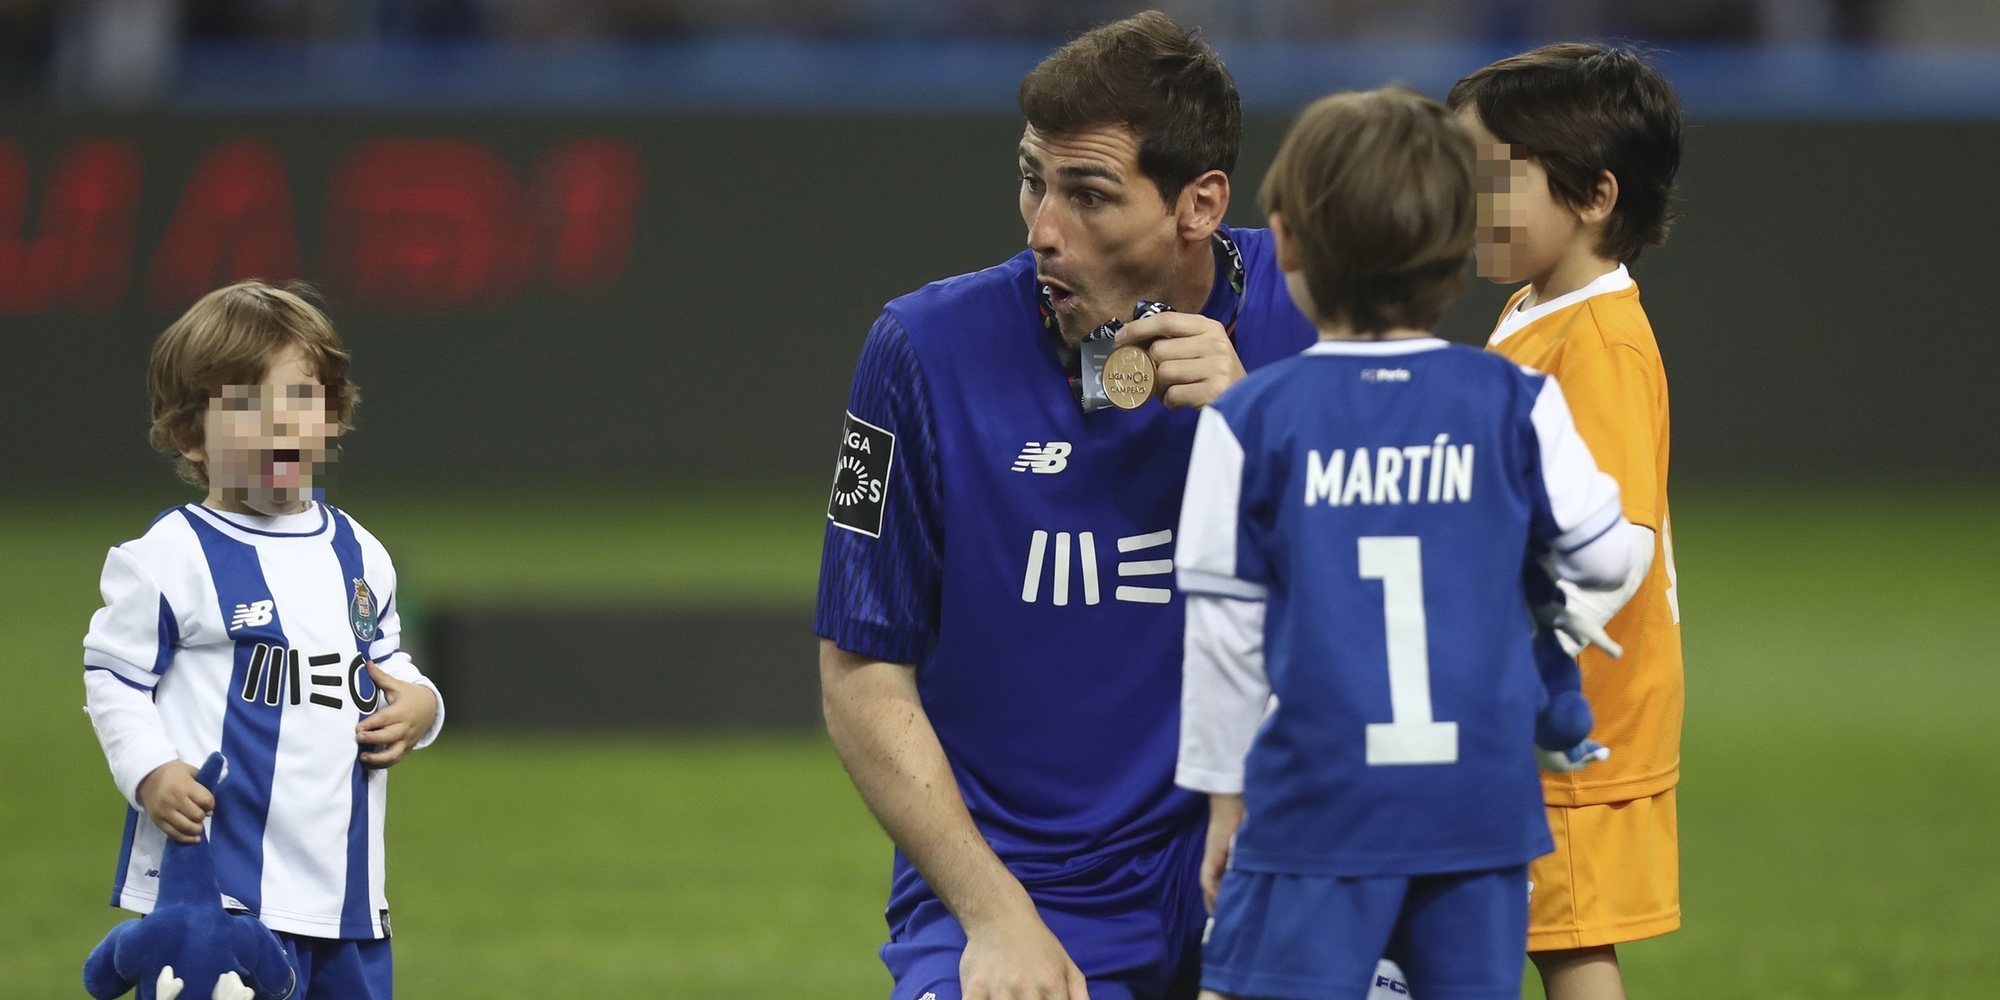 Martín y Lucas, los mejores apoyos de Iker Casillas en la Supercopa de Portugal